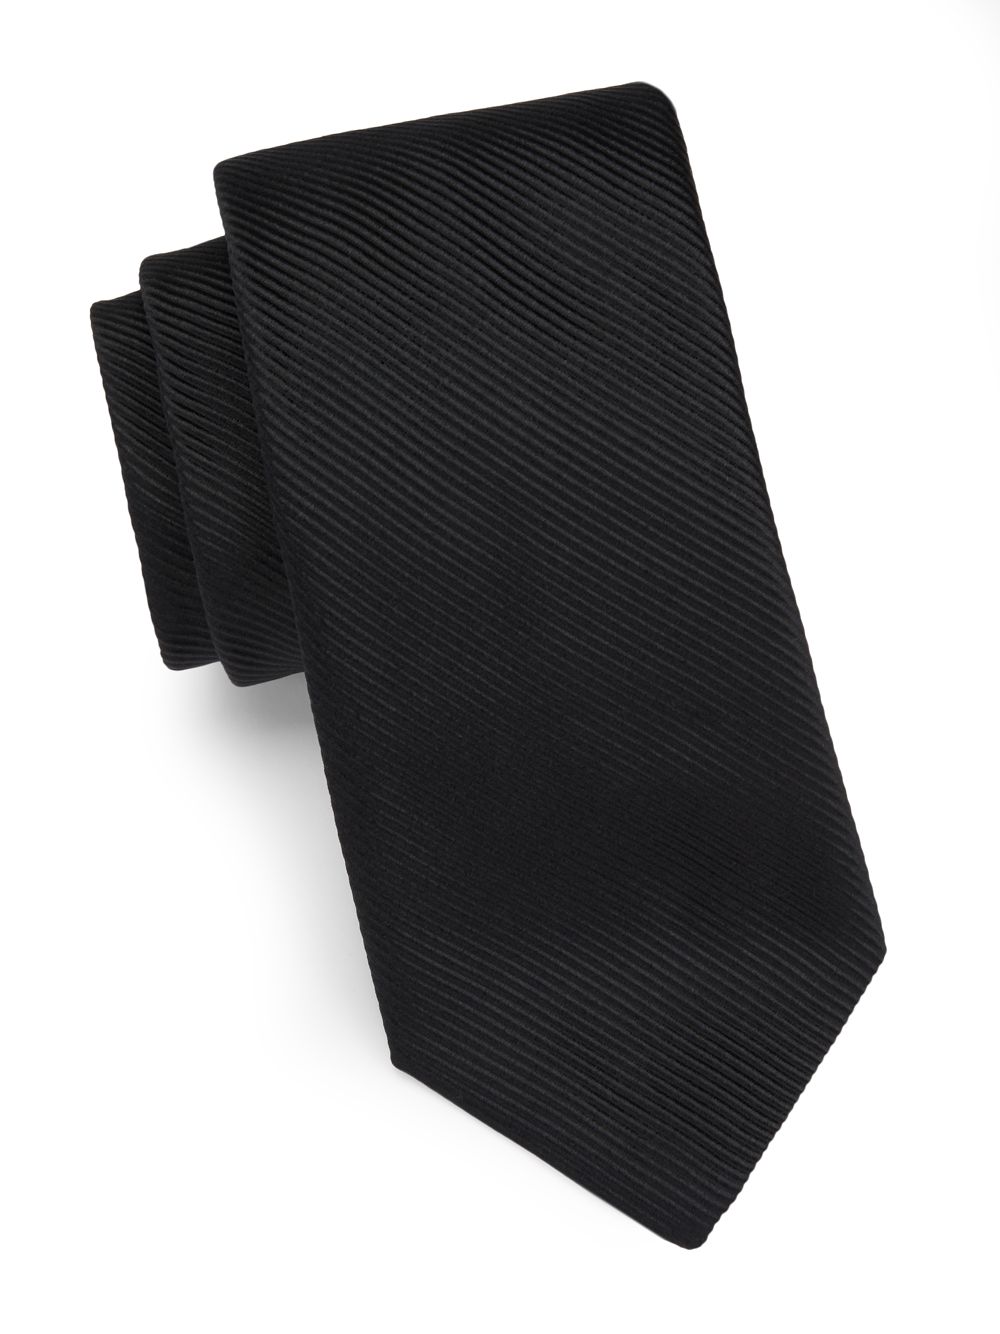 Ребристый шелковый галстук Paul Stuart, черный